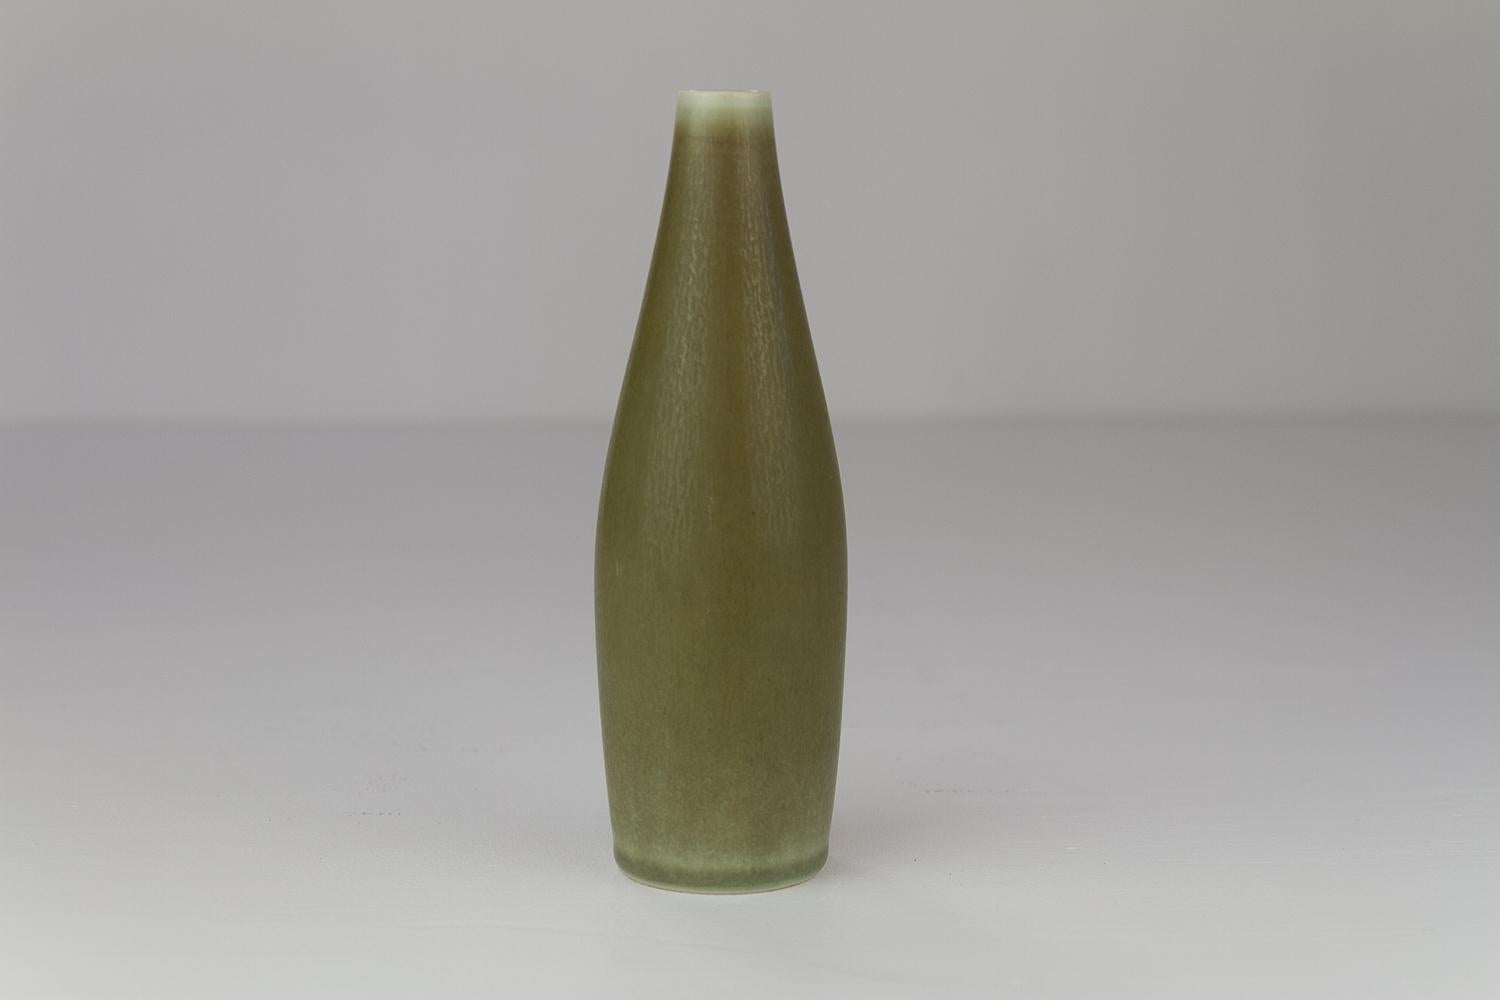 Danish Modern Ceramic Vase by Per Linnemann-Schmidt for Palshus, 1960s. For Sale 2